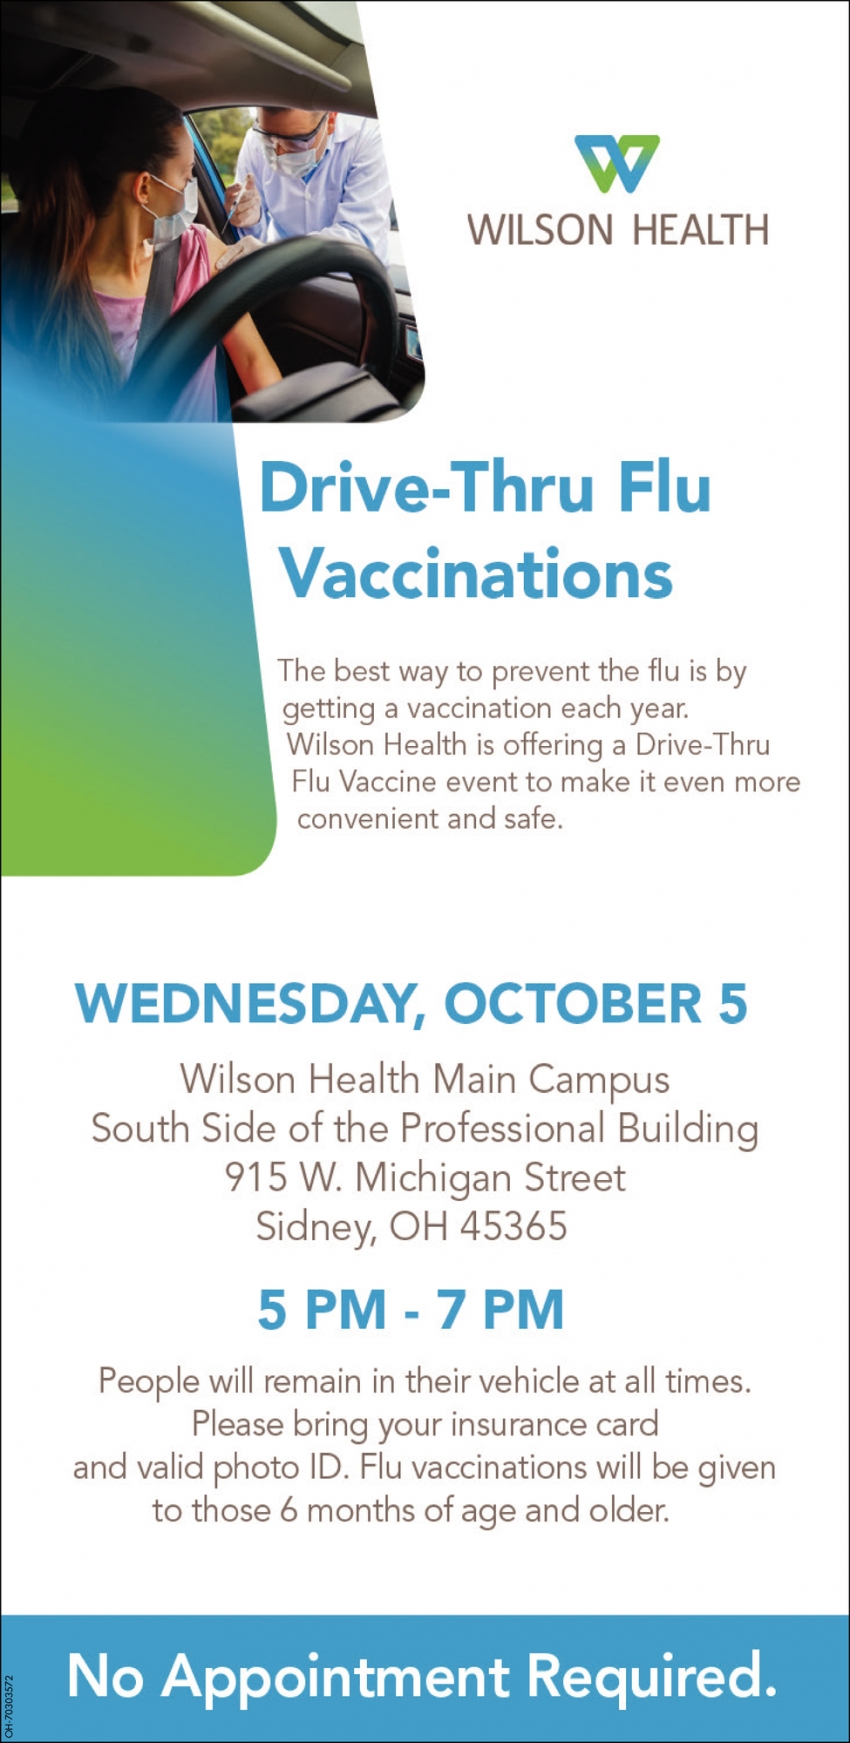 Drive-Thru Flu Vaccinations